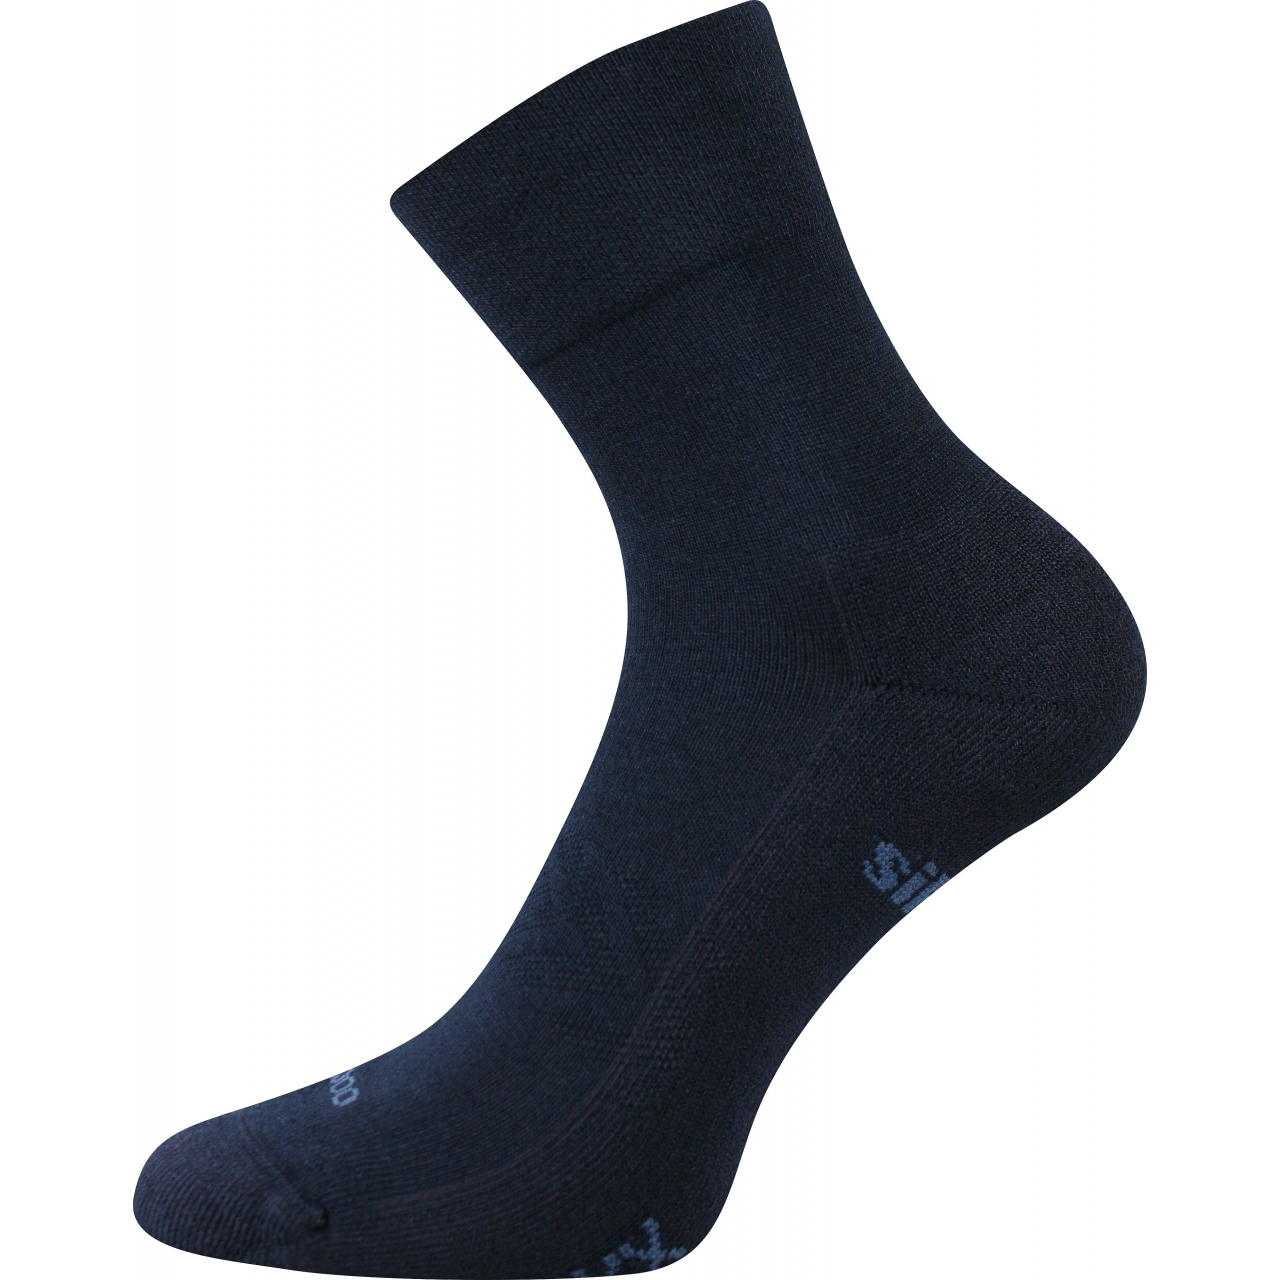 Ponožky sportovní unisex Voxx Esencis - tmavě modré, 43-46